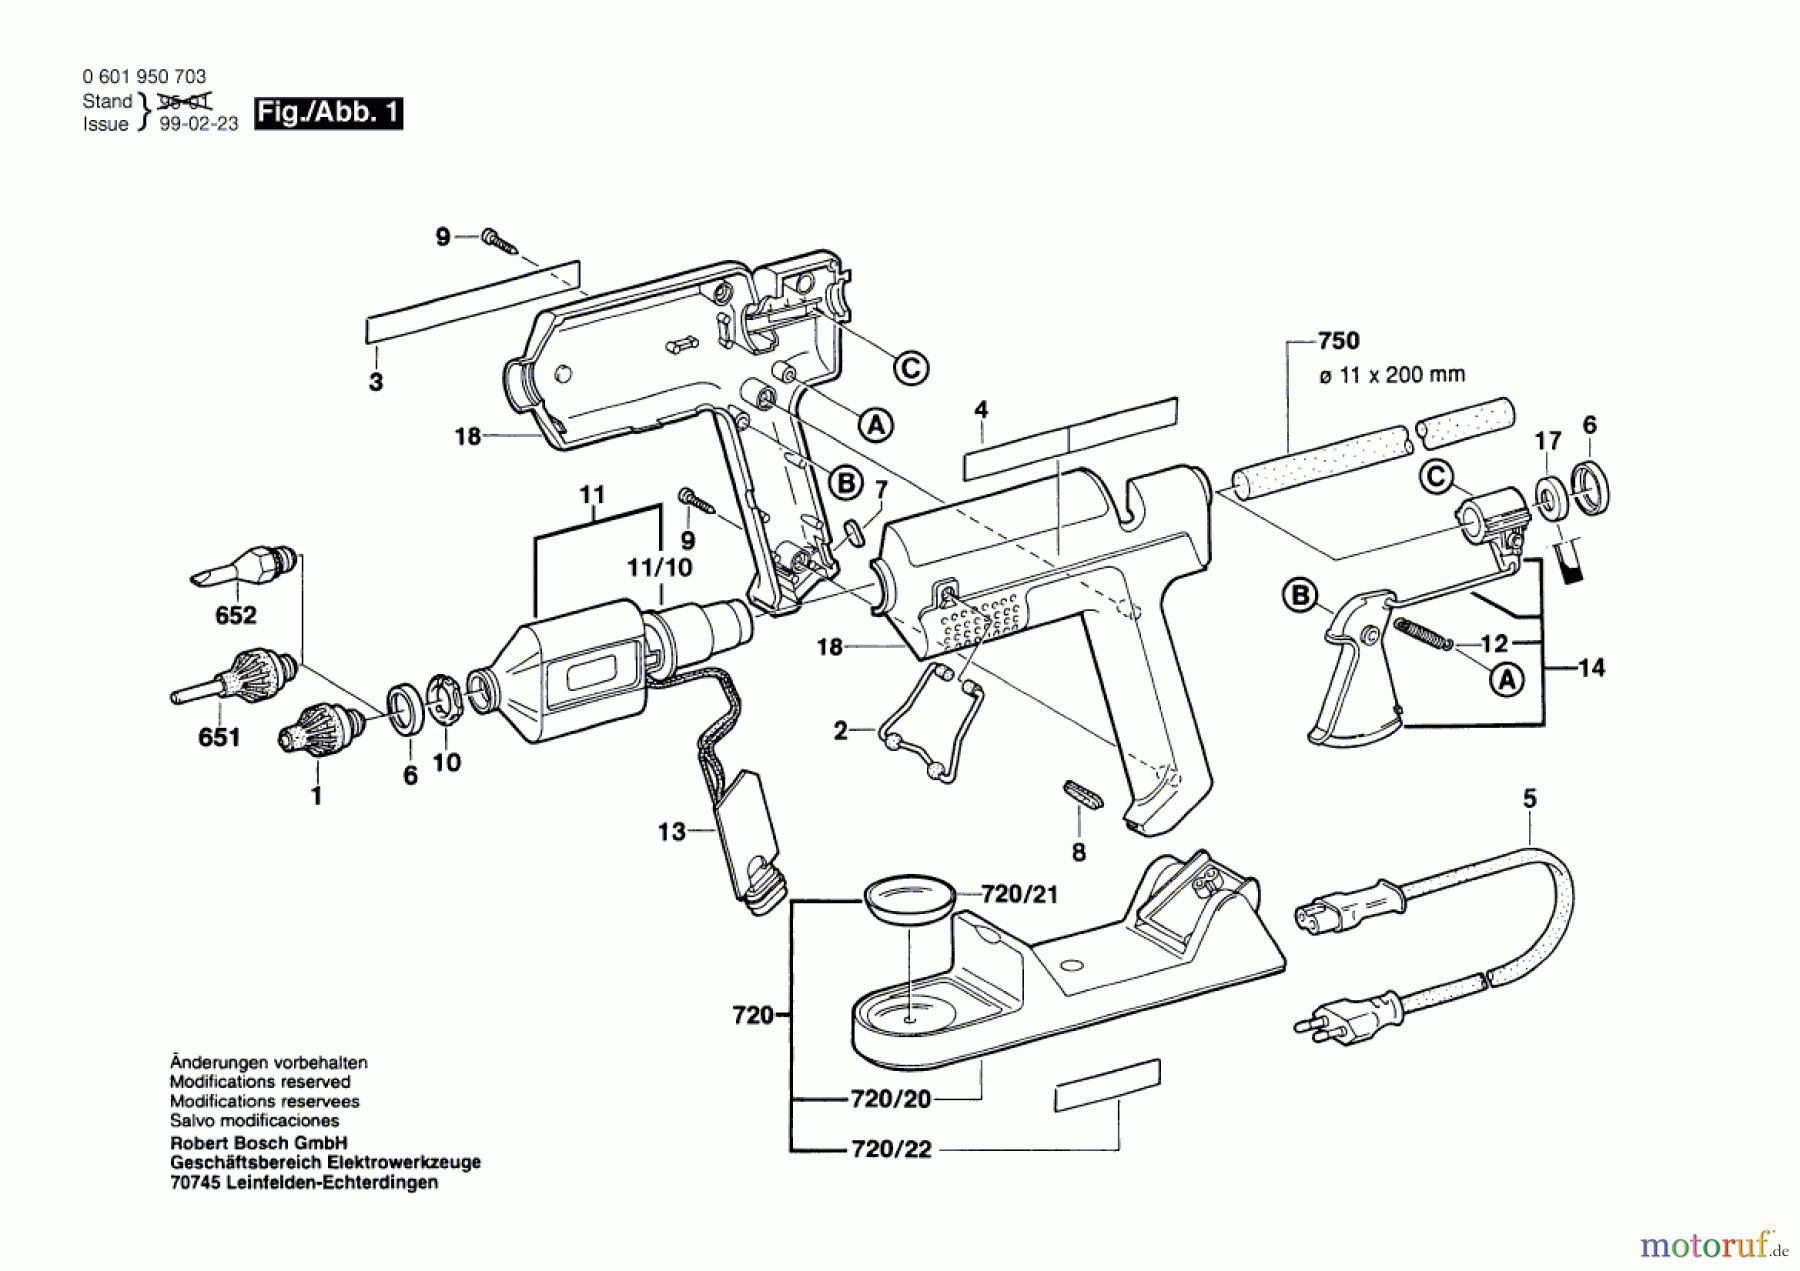  Bosch Werkzeug Hw-Klebepistole GKP 200 CE Seite 1